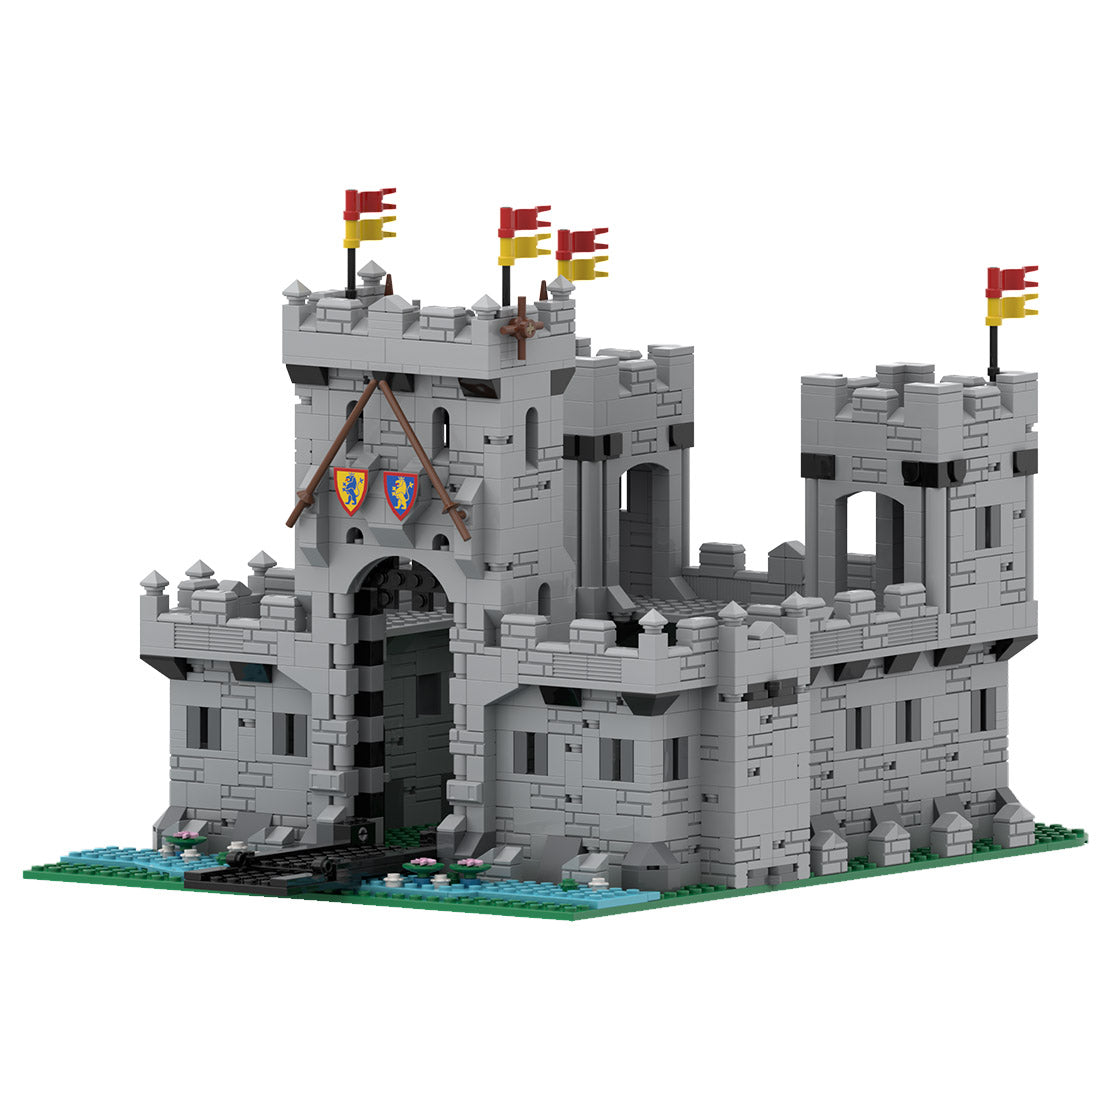 MOC-126740 King's Castle